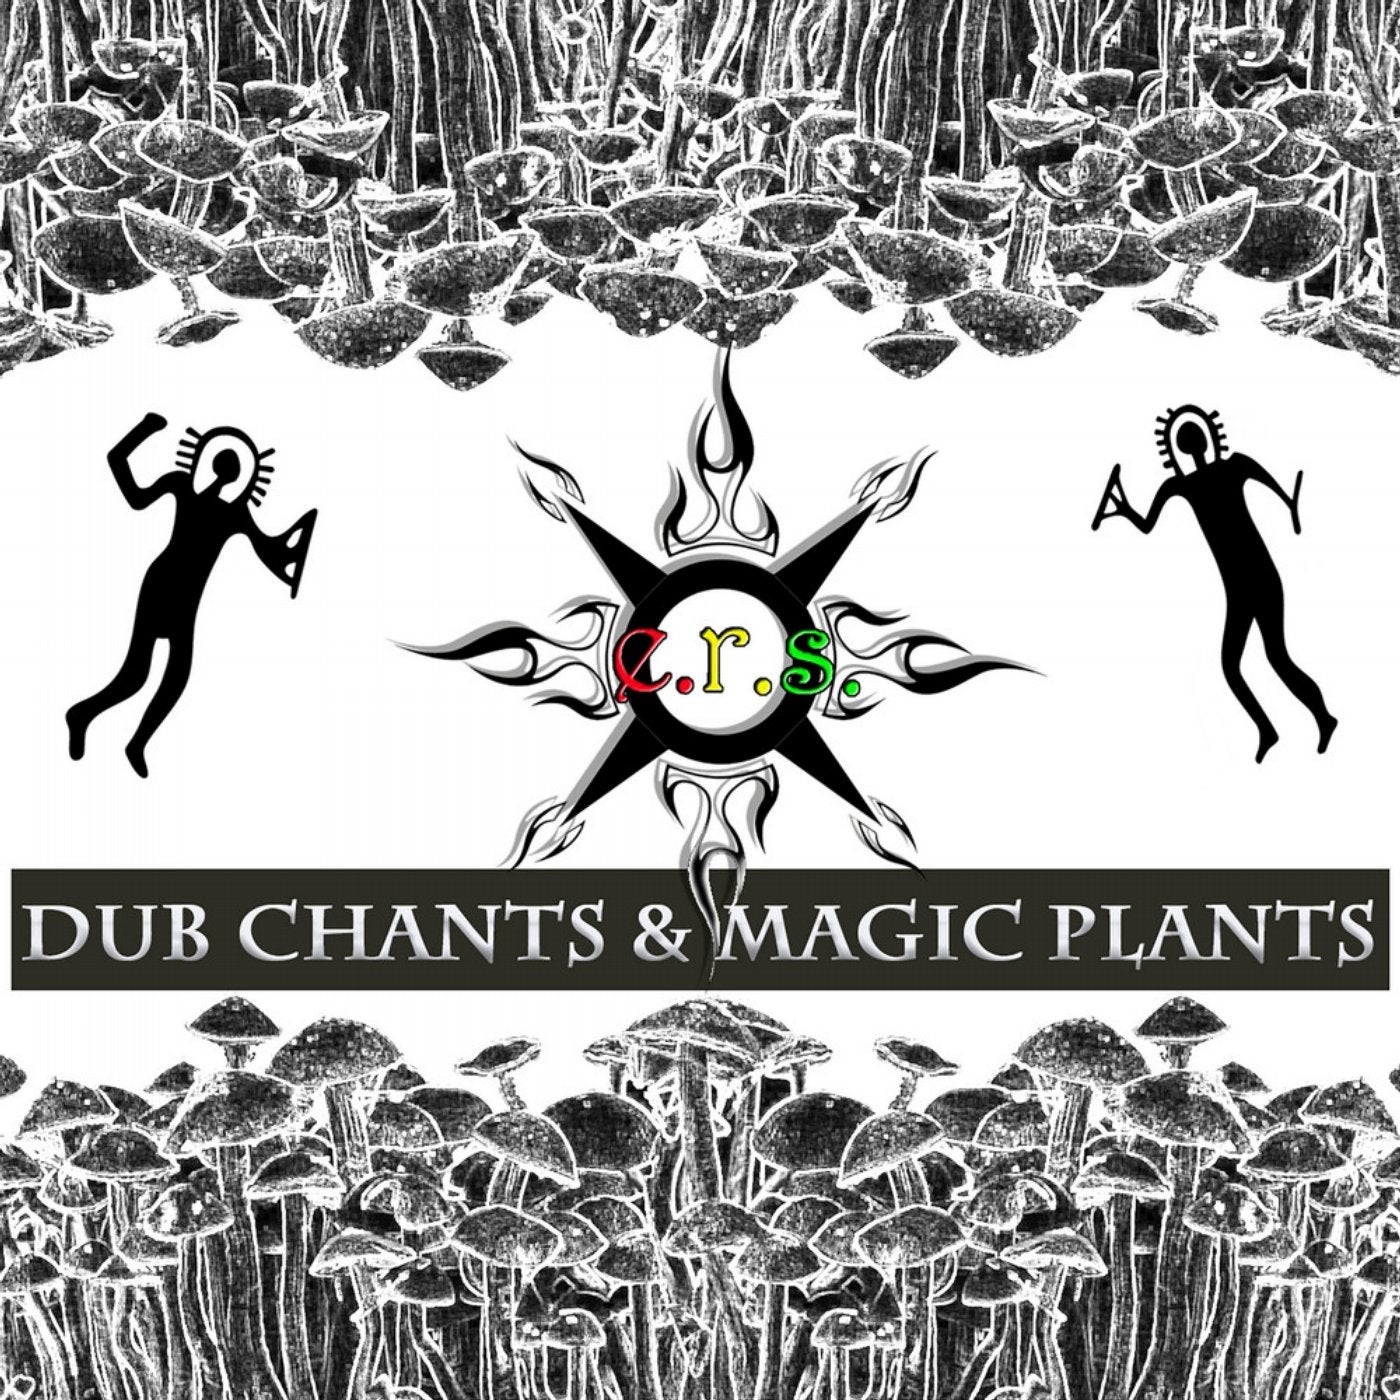 Dub Chants and Magic Plants